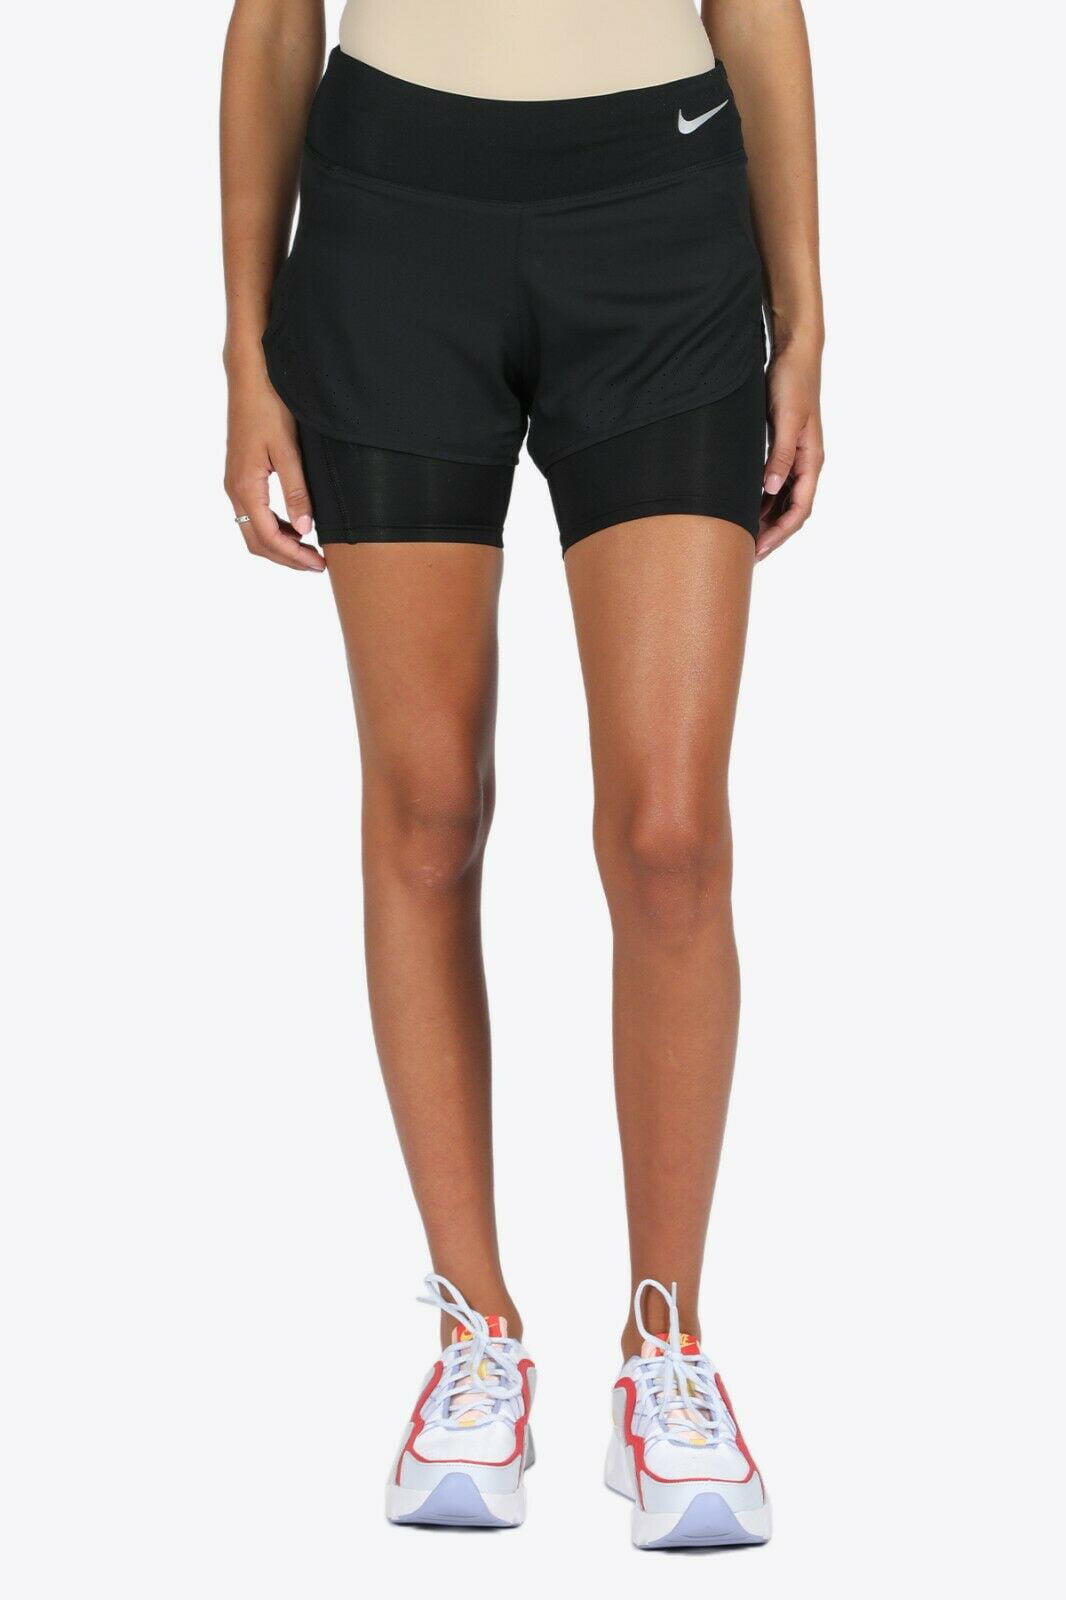 Nike Women's 2-in-1 Running Shorts Size XL Walmart.com